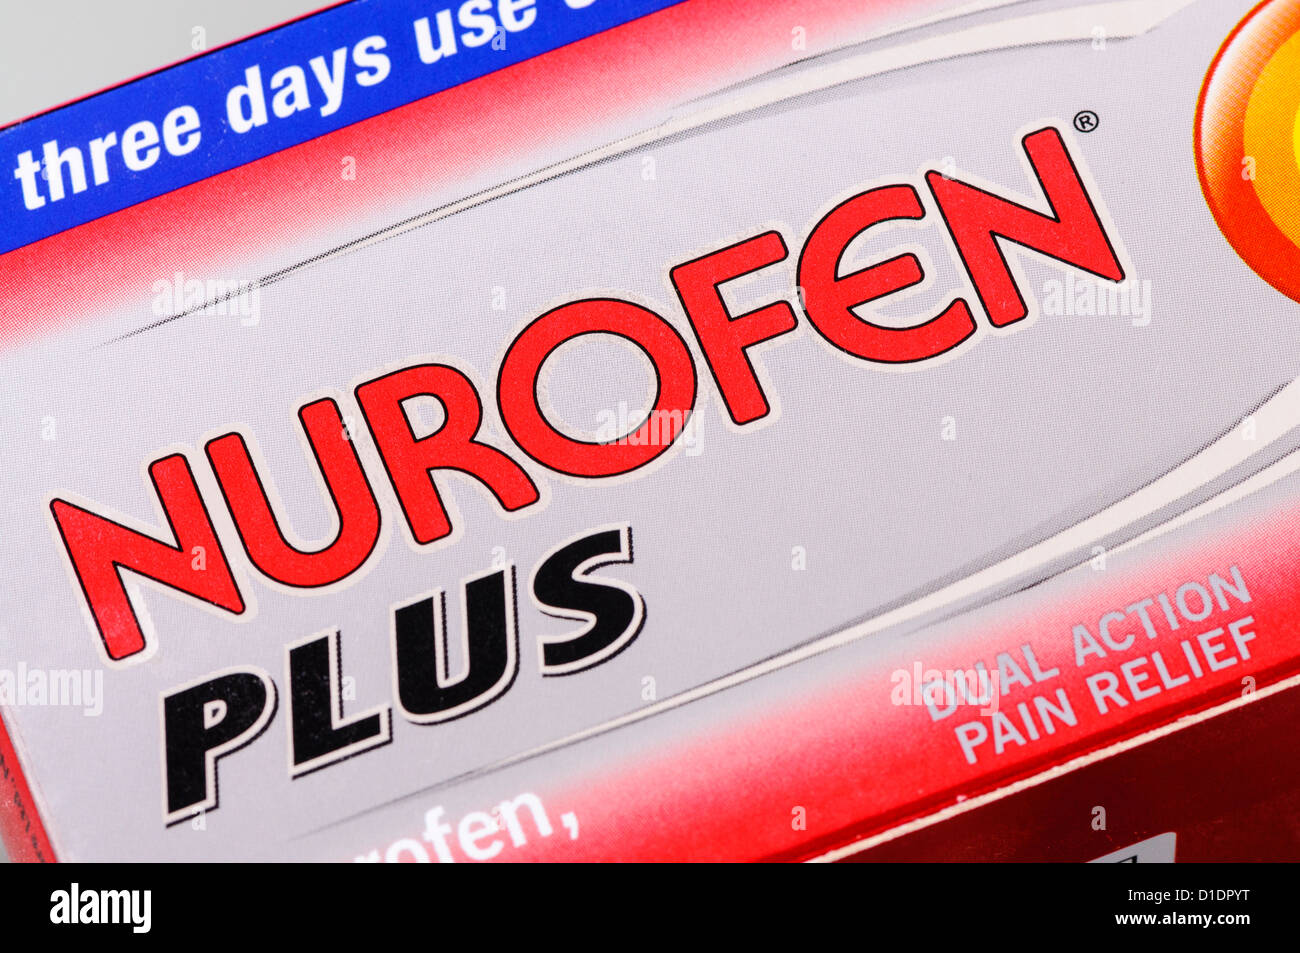 Caja de Nurofen Plus analgésico comprimidos que contienen ibuprofeno y codeína Foto de stock